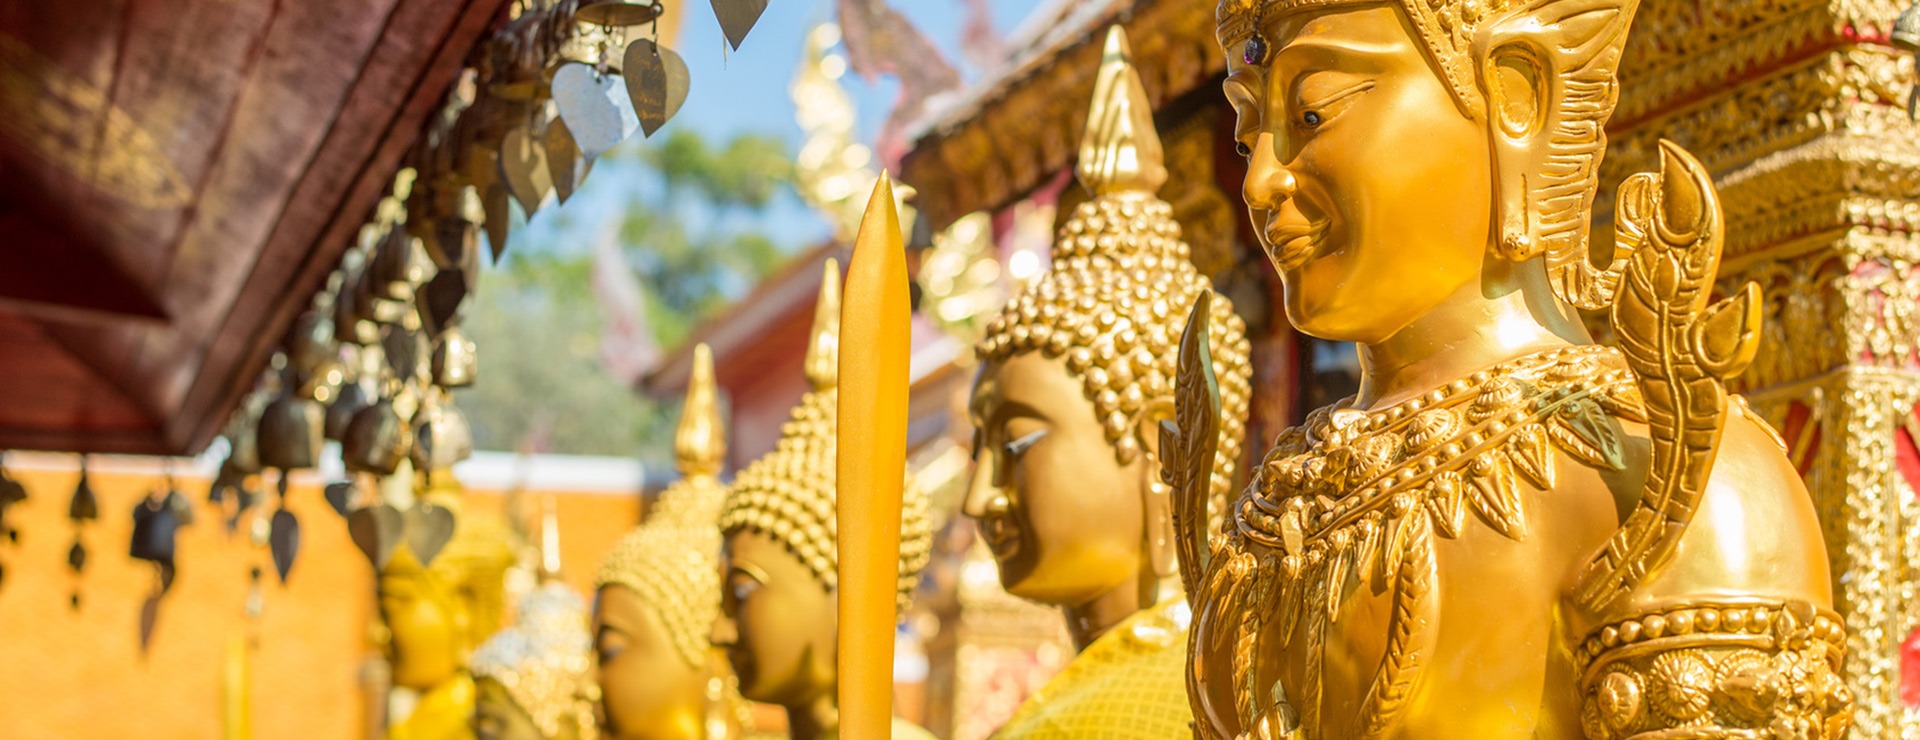 Świątynia w Tajlandii